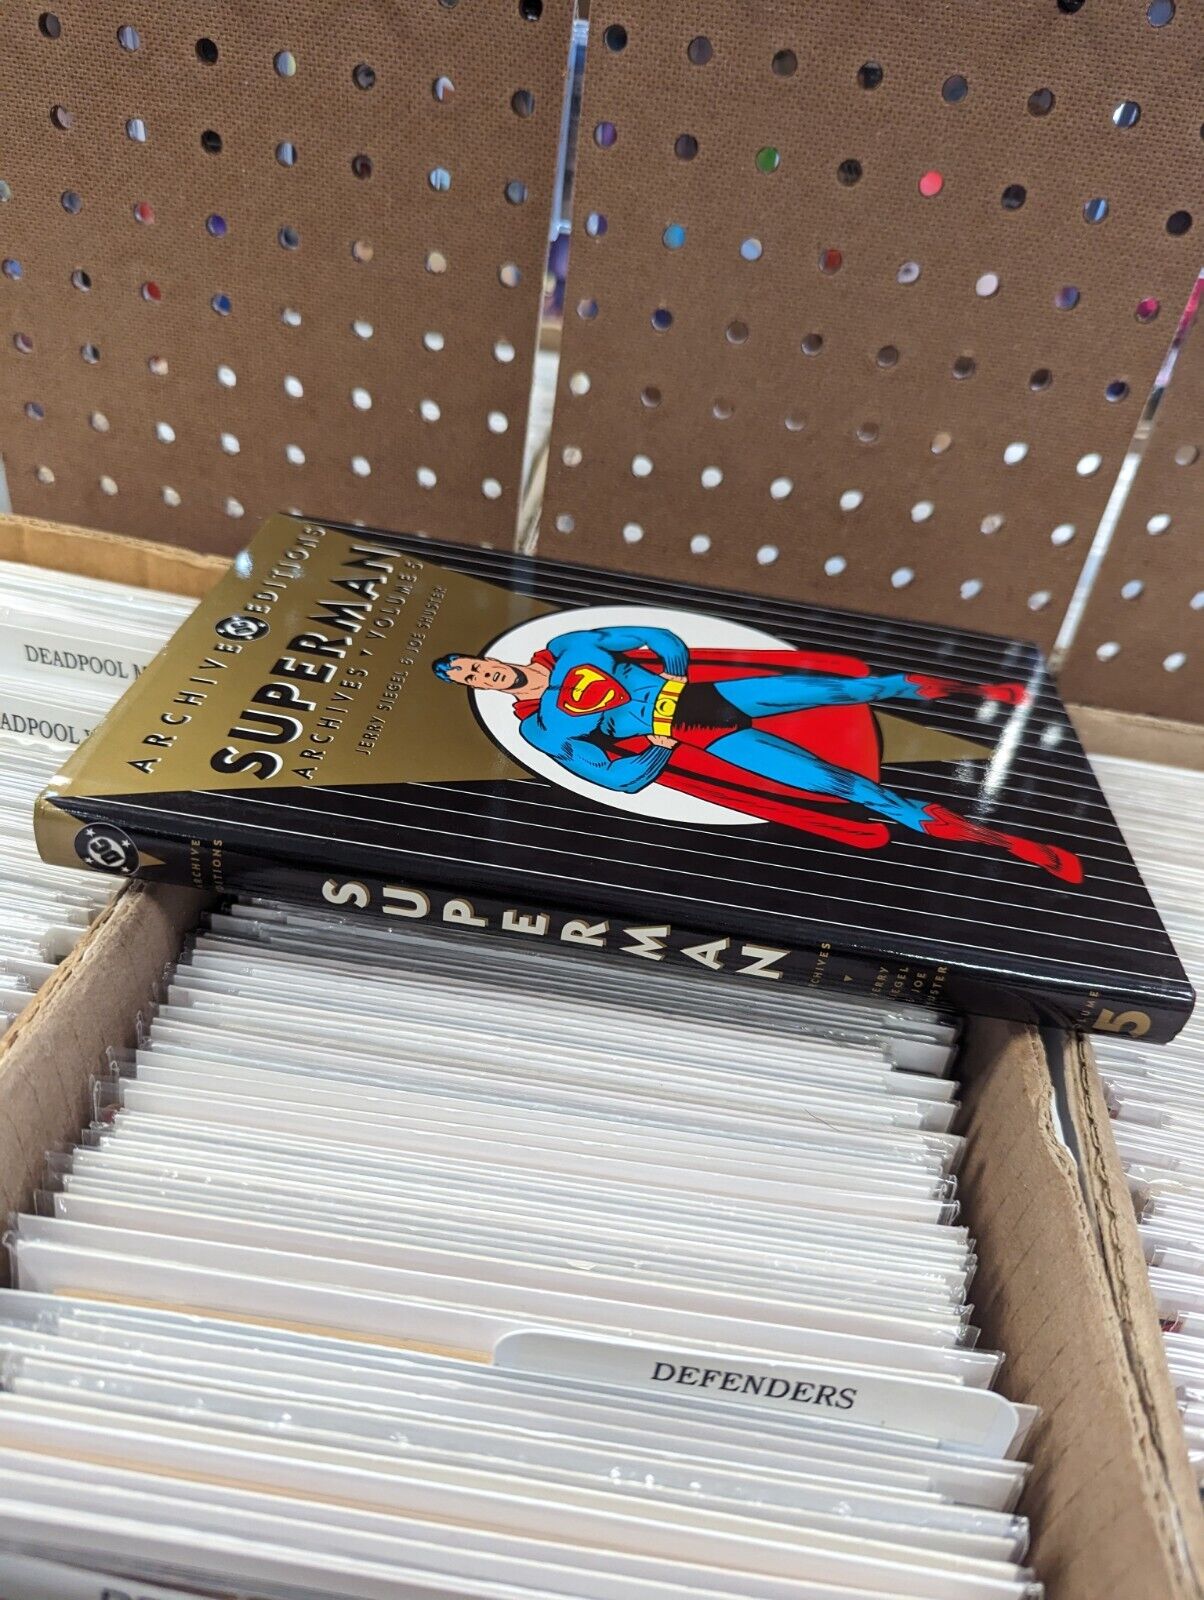 DC Comics Superman Archives Volume 5 Graphic Novel 2000